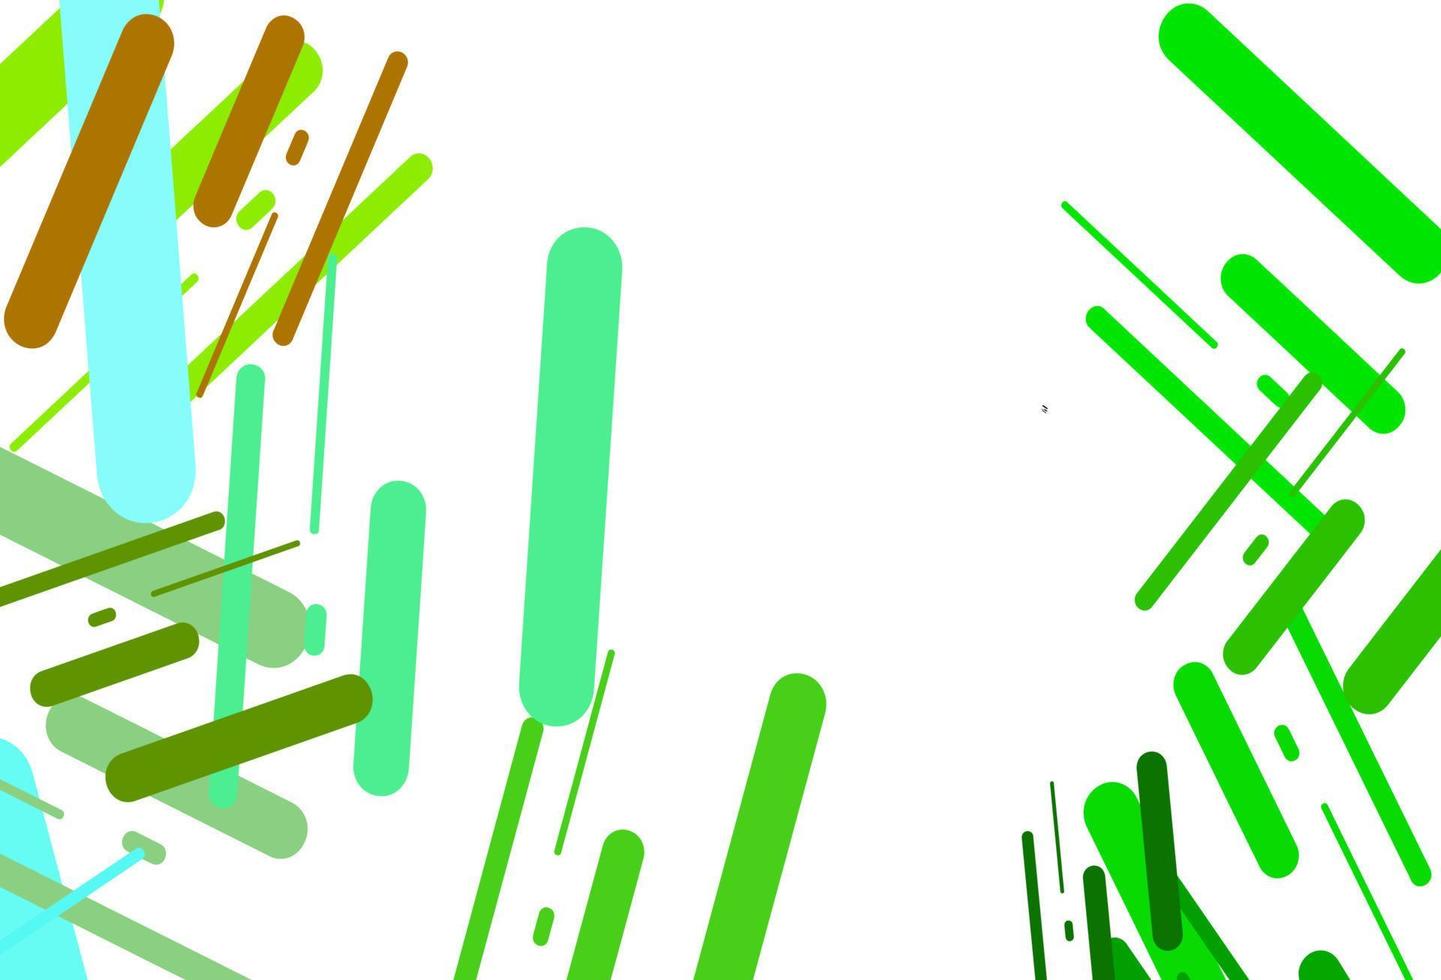 texture vectorielle vert clair, jaune avec des lignes colorées. vecteur